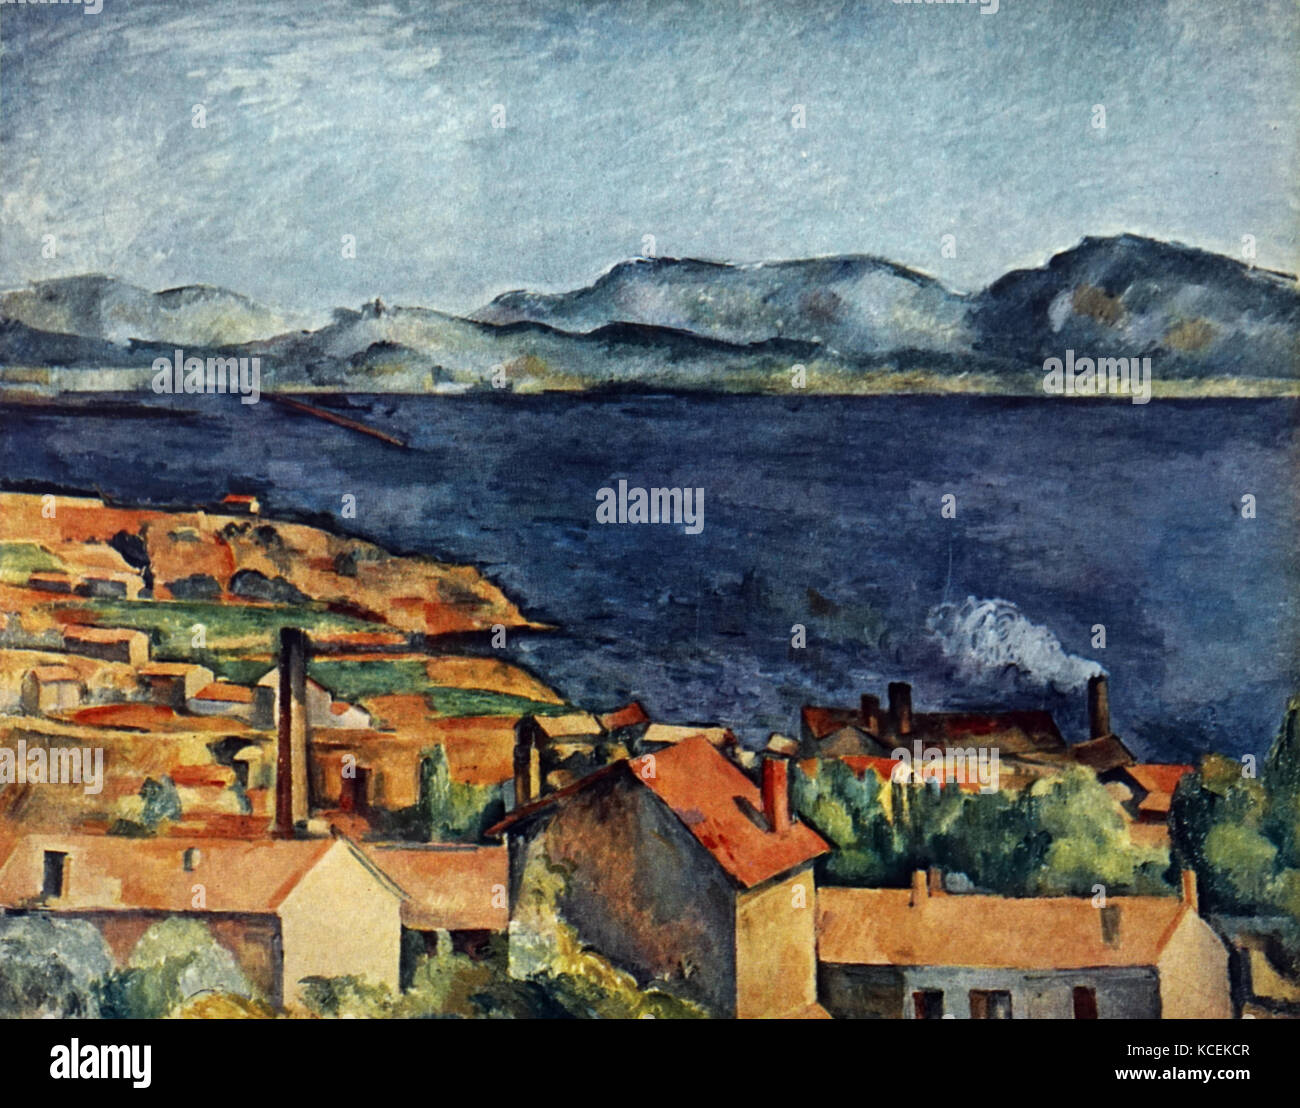 Gemälde mit dem Titel "Die Bucht von Marseille, von L'Estaque' von Paul Cézanne (1839-1906), ein französischer Post-Impressionist Painter. Vom 19. Jahrhundert Stockfoto